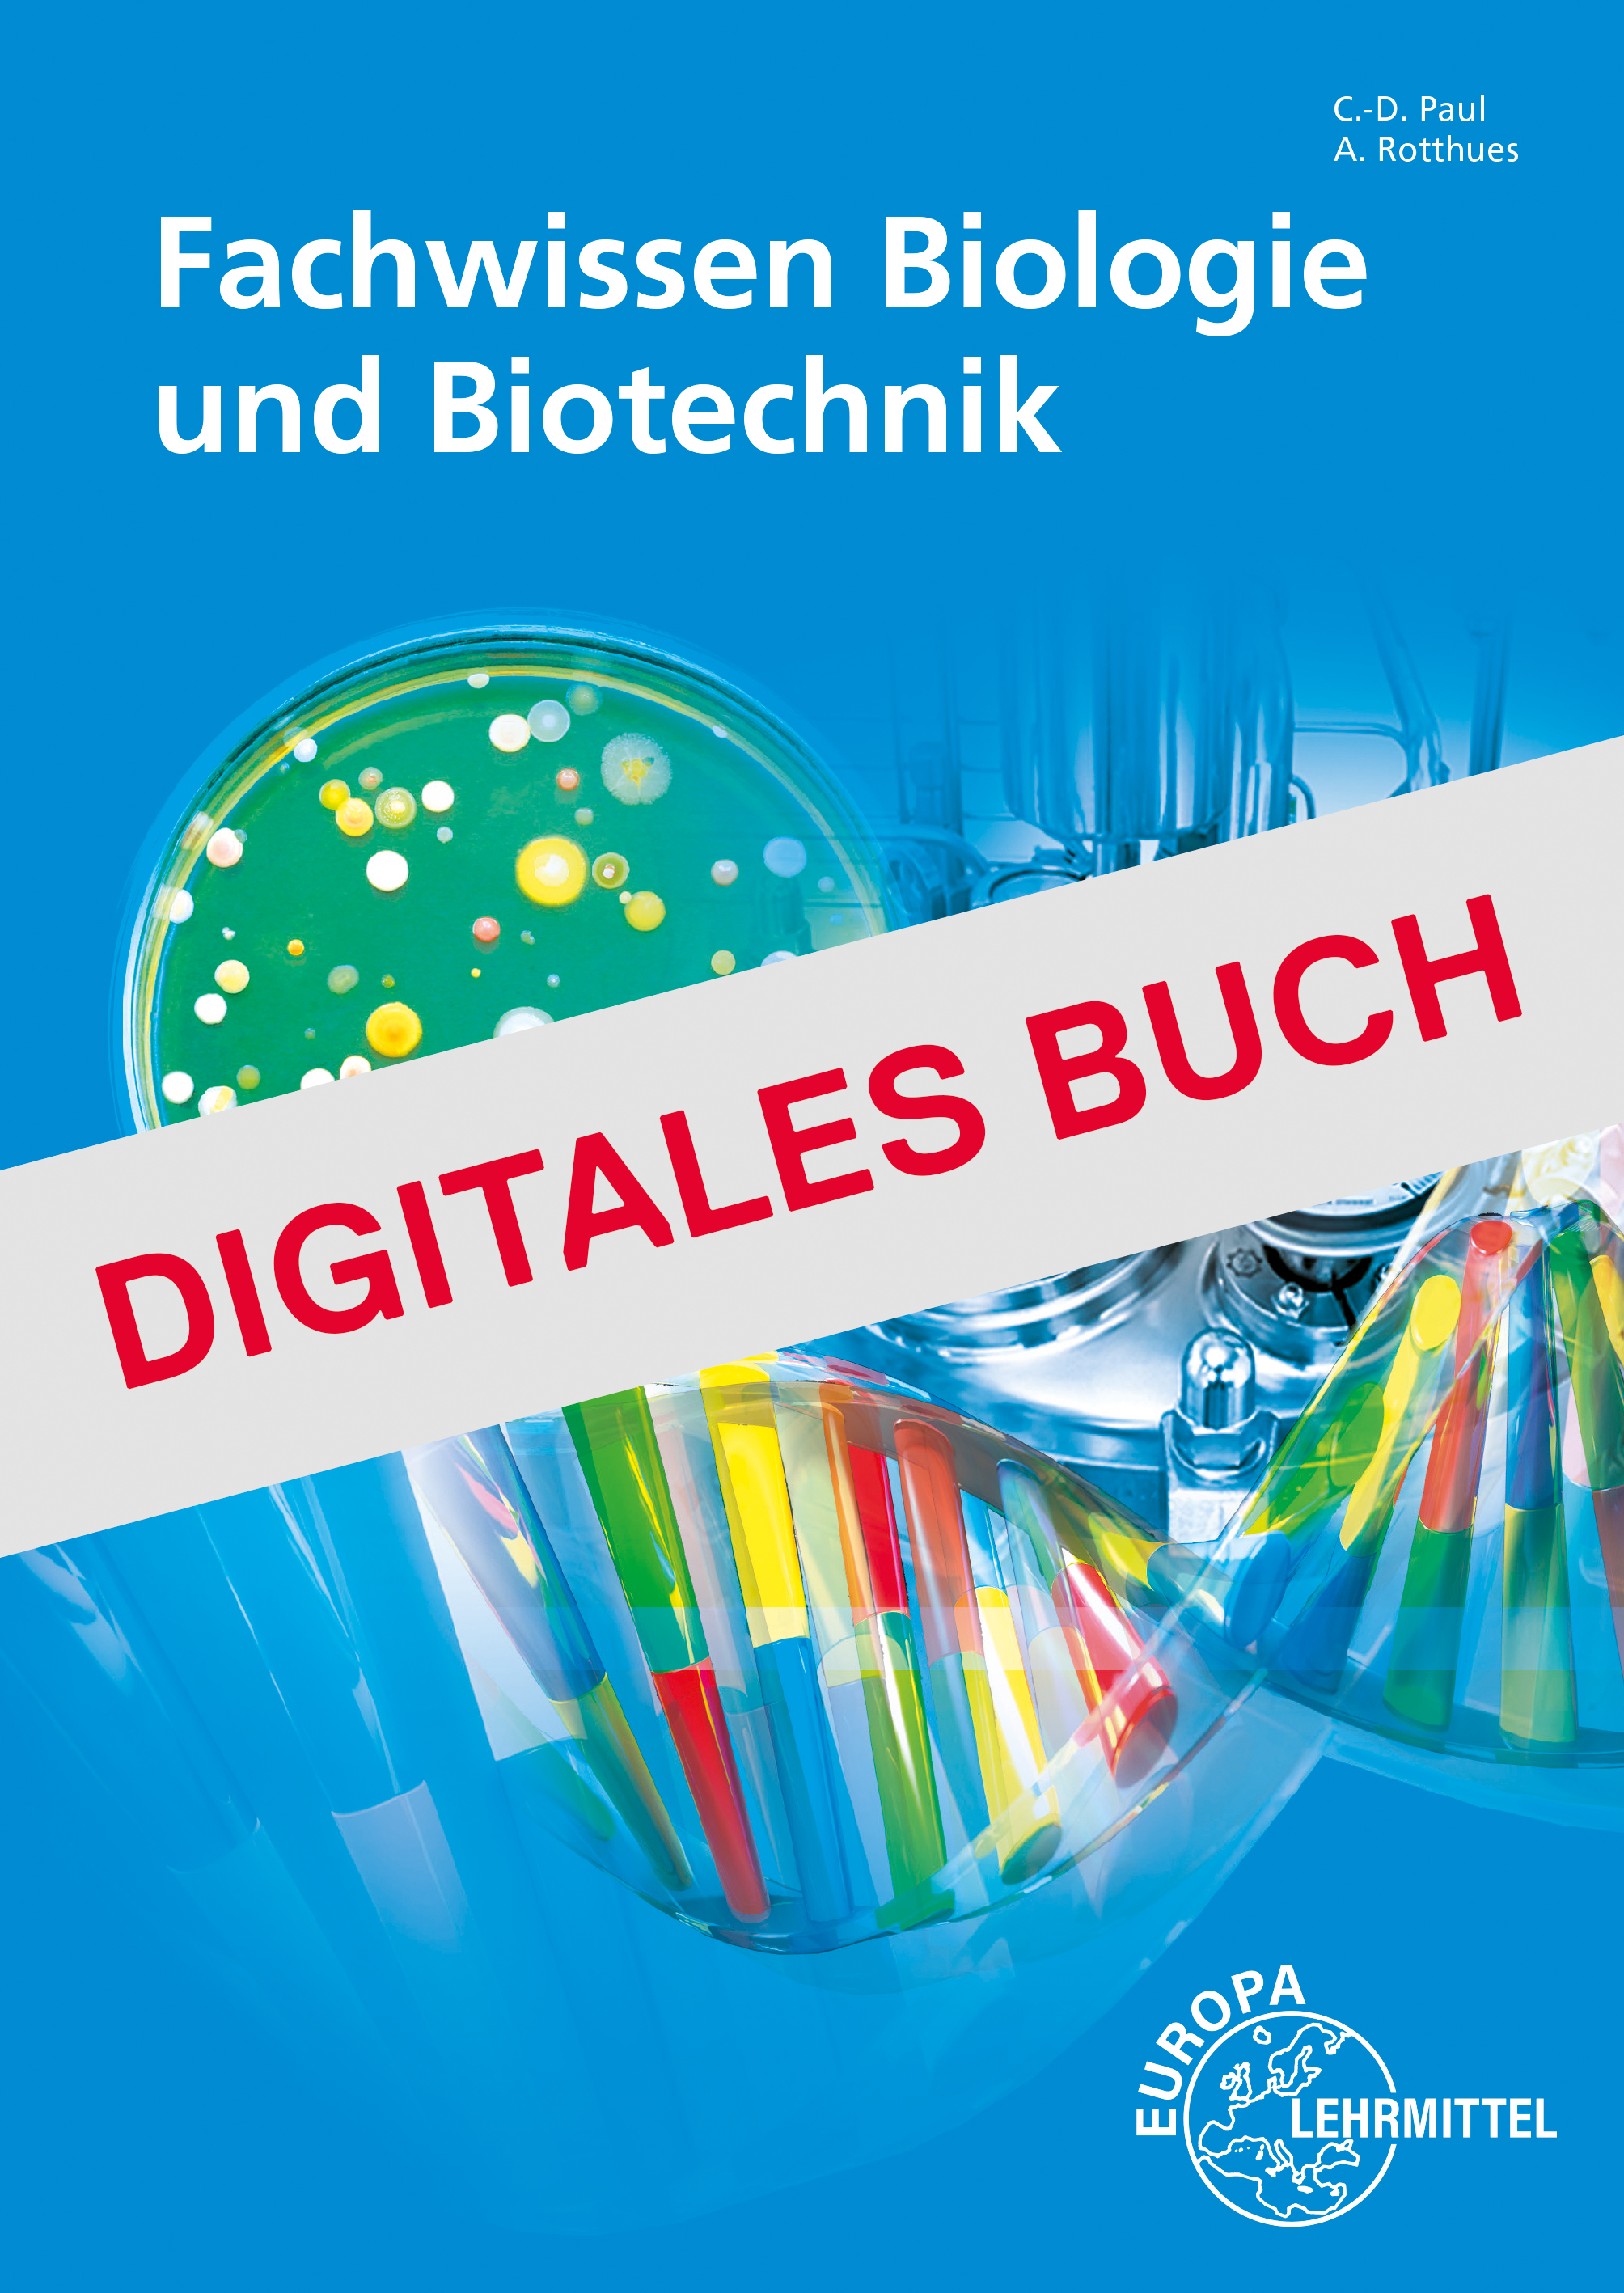 Fachwissen Biologie und Biotechnik - Digitales Buch